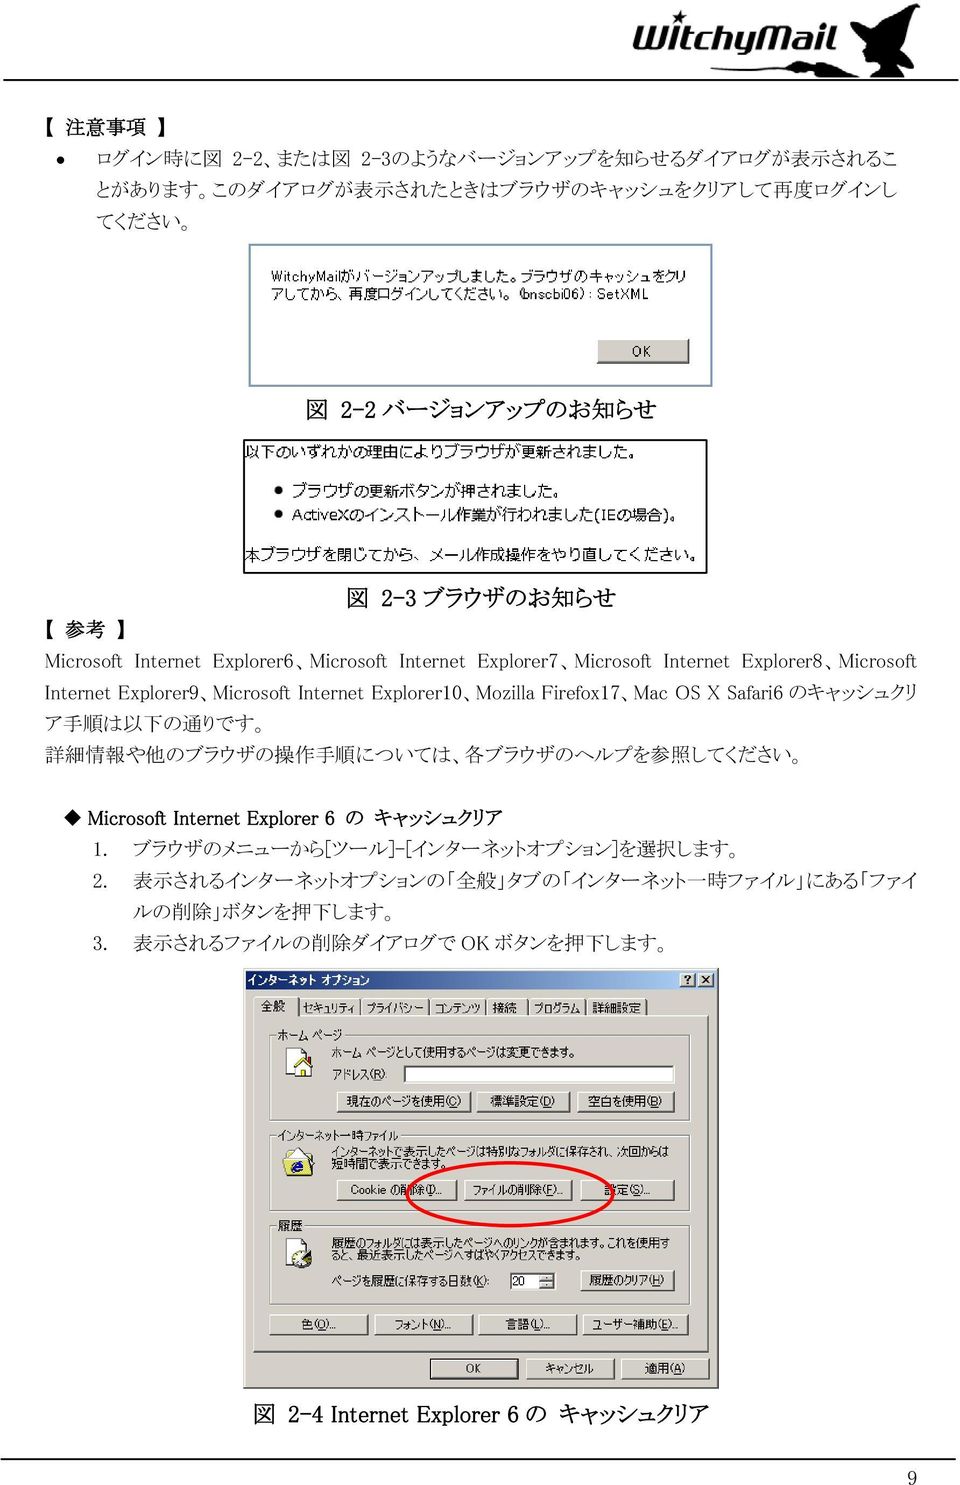 OS X Safari6 のキャッシュクリ ア 手 順 は 以 下 の 通 りです 詳 細 情 報 や 他 のブラウザの 操 作 手 順 については 各 ブラウザのヘルプを 参 照 してください Microsoft Internet Explorer 6 の キャッシュクリア 1.